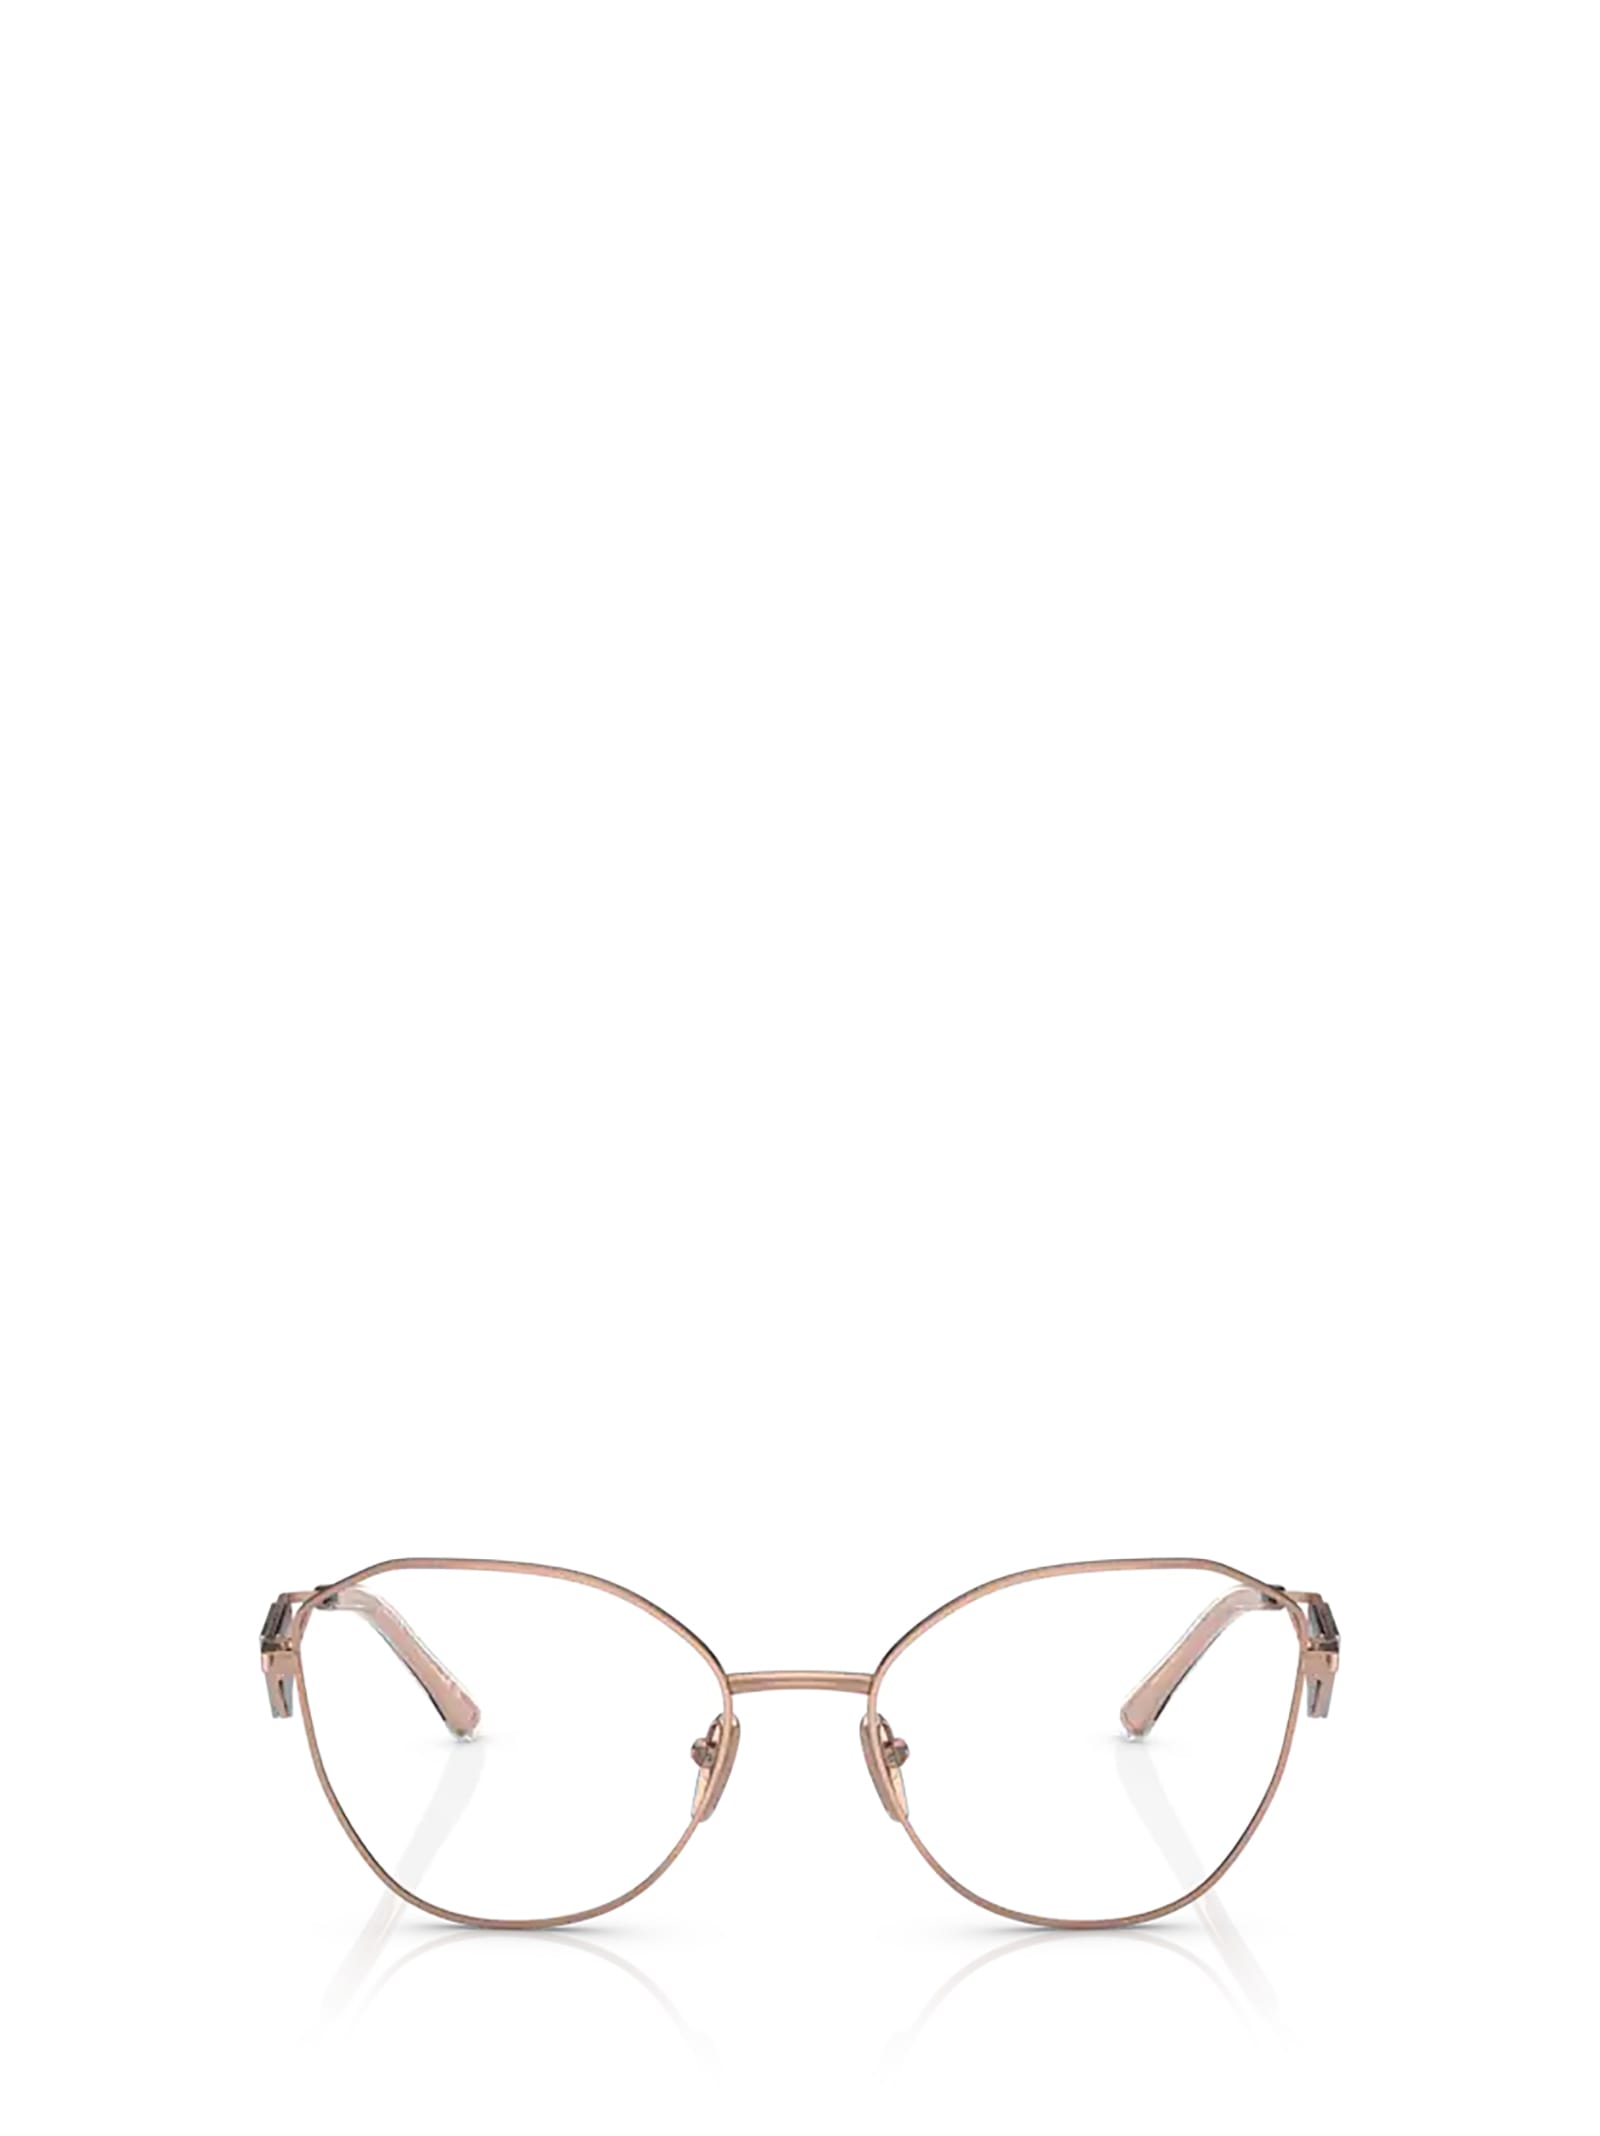 Prada Pr 52zv Pink Gold Glasses